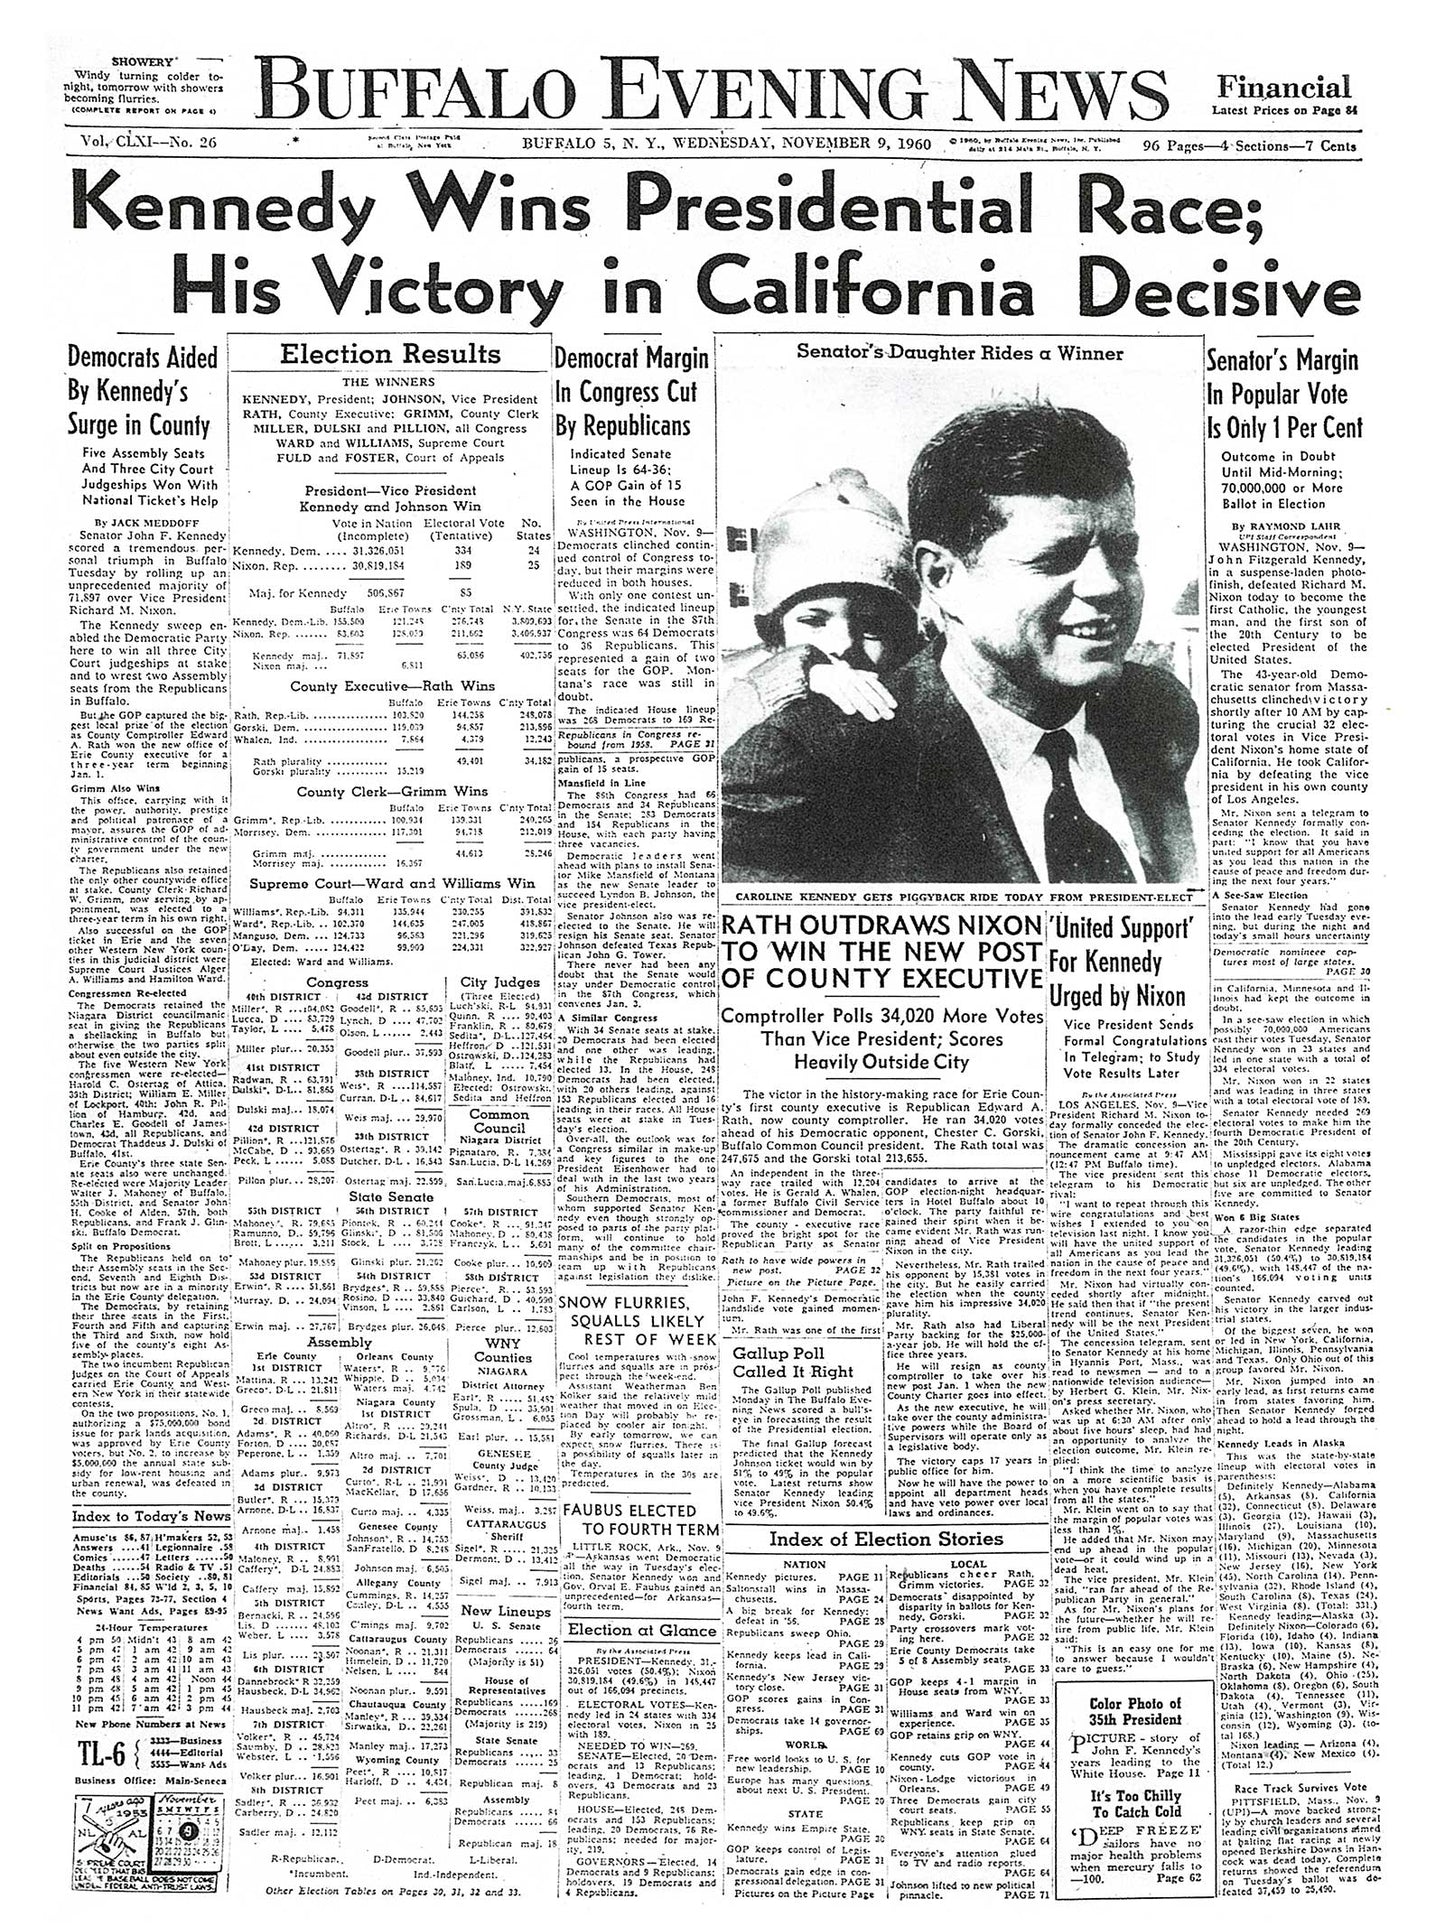 Headlines in History - Kennedy Wins Presidential Race